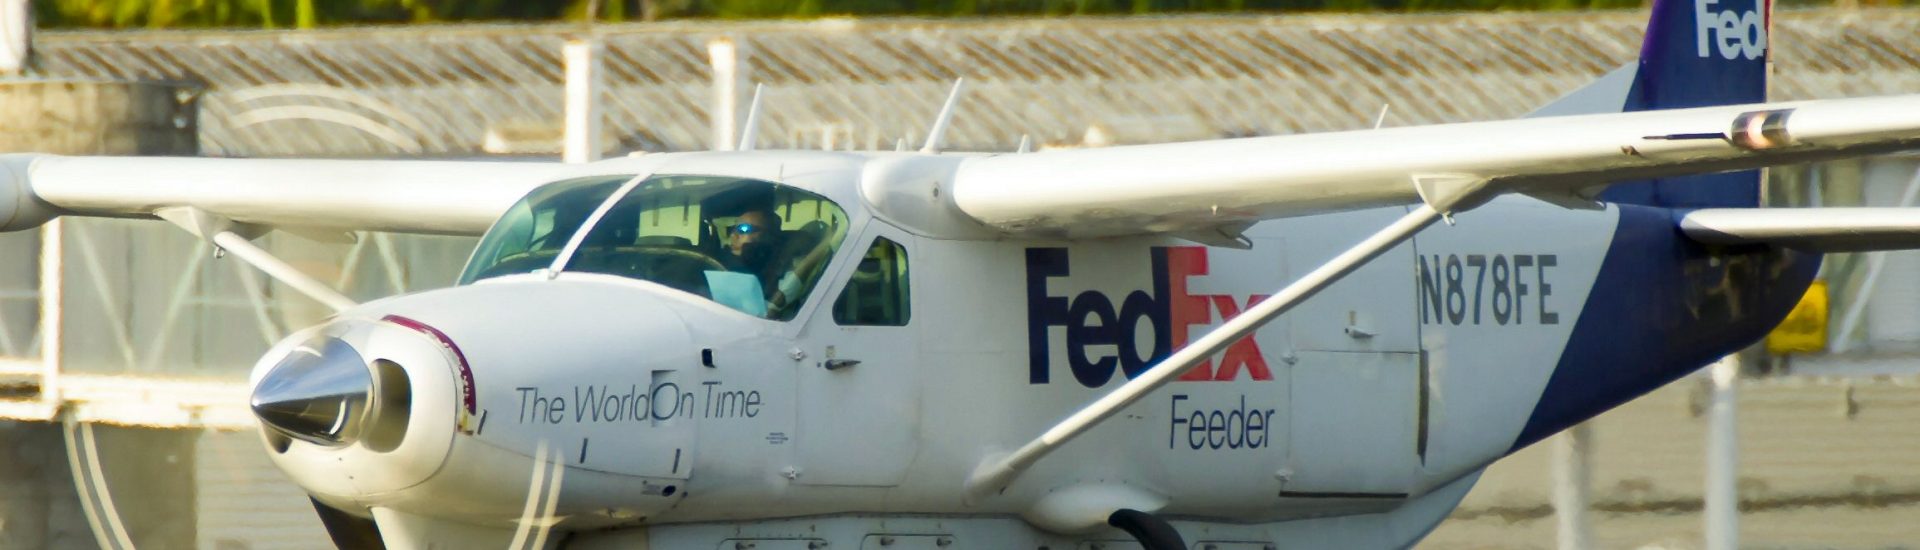 Cessna 208B Fedex Feeder N878FE